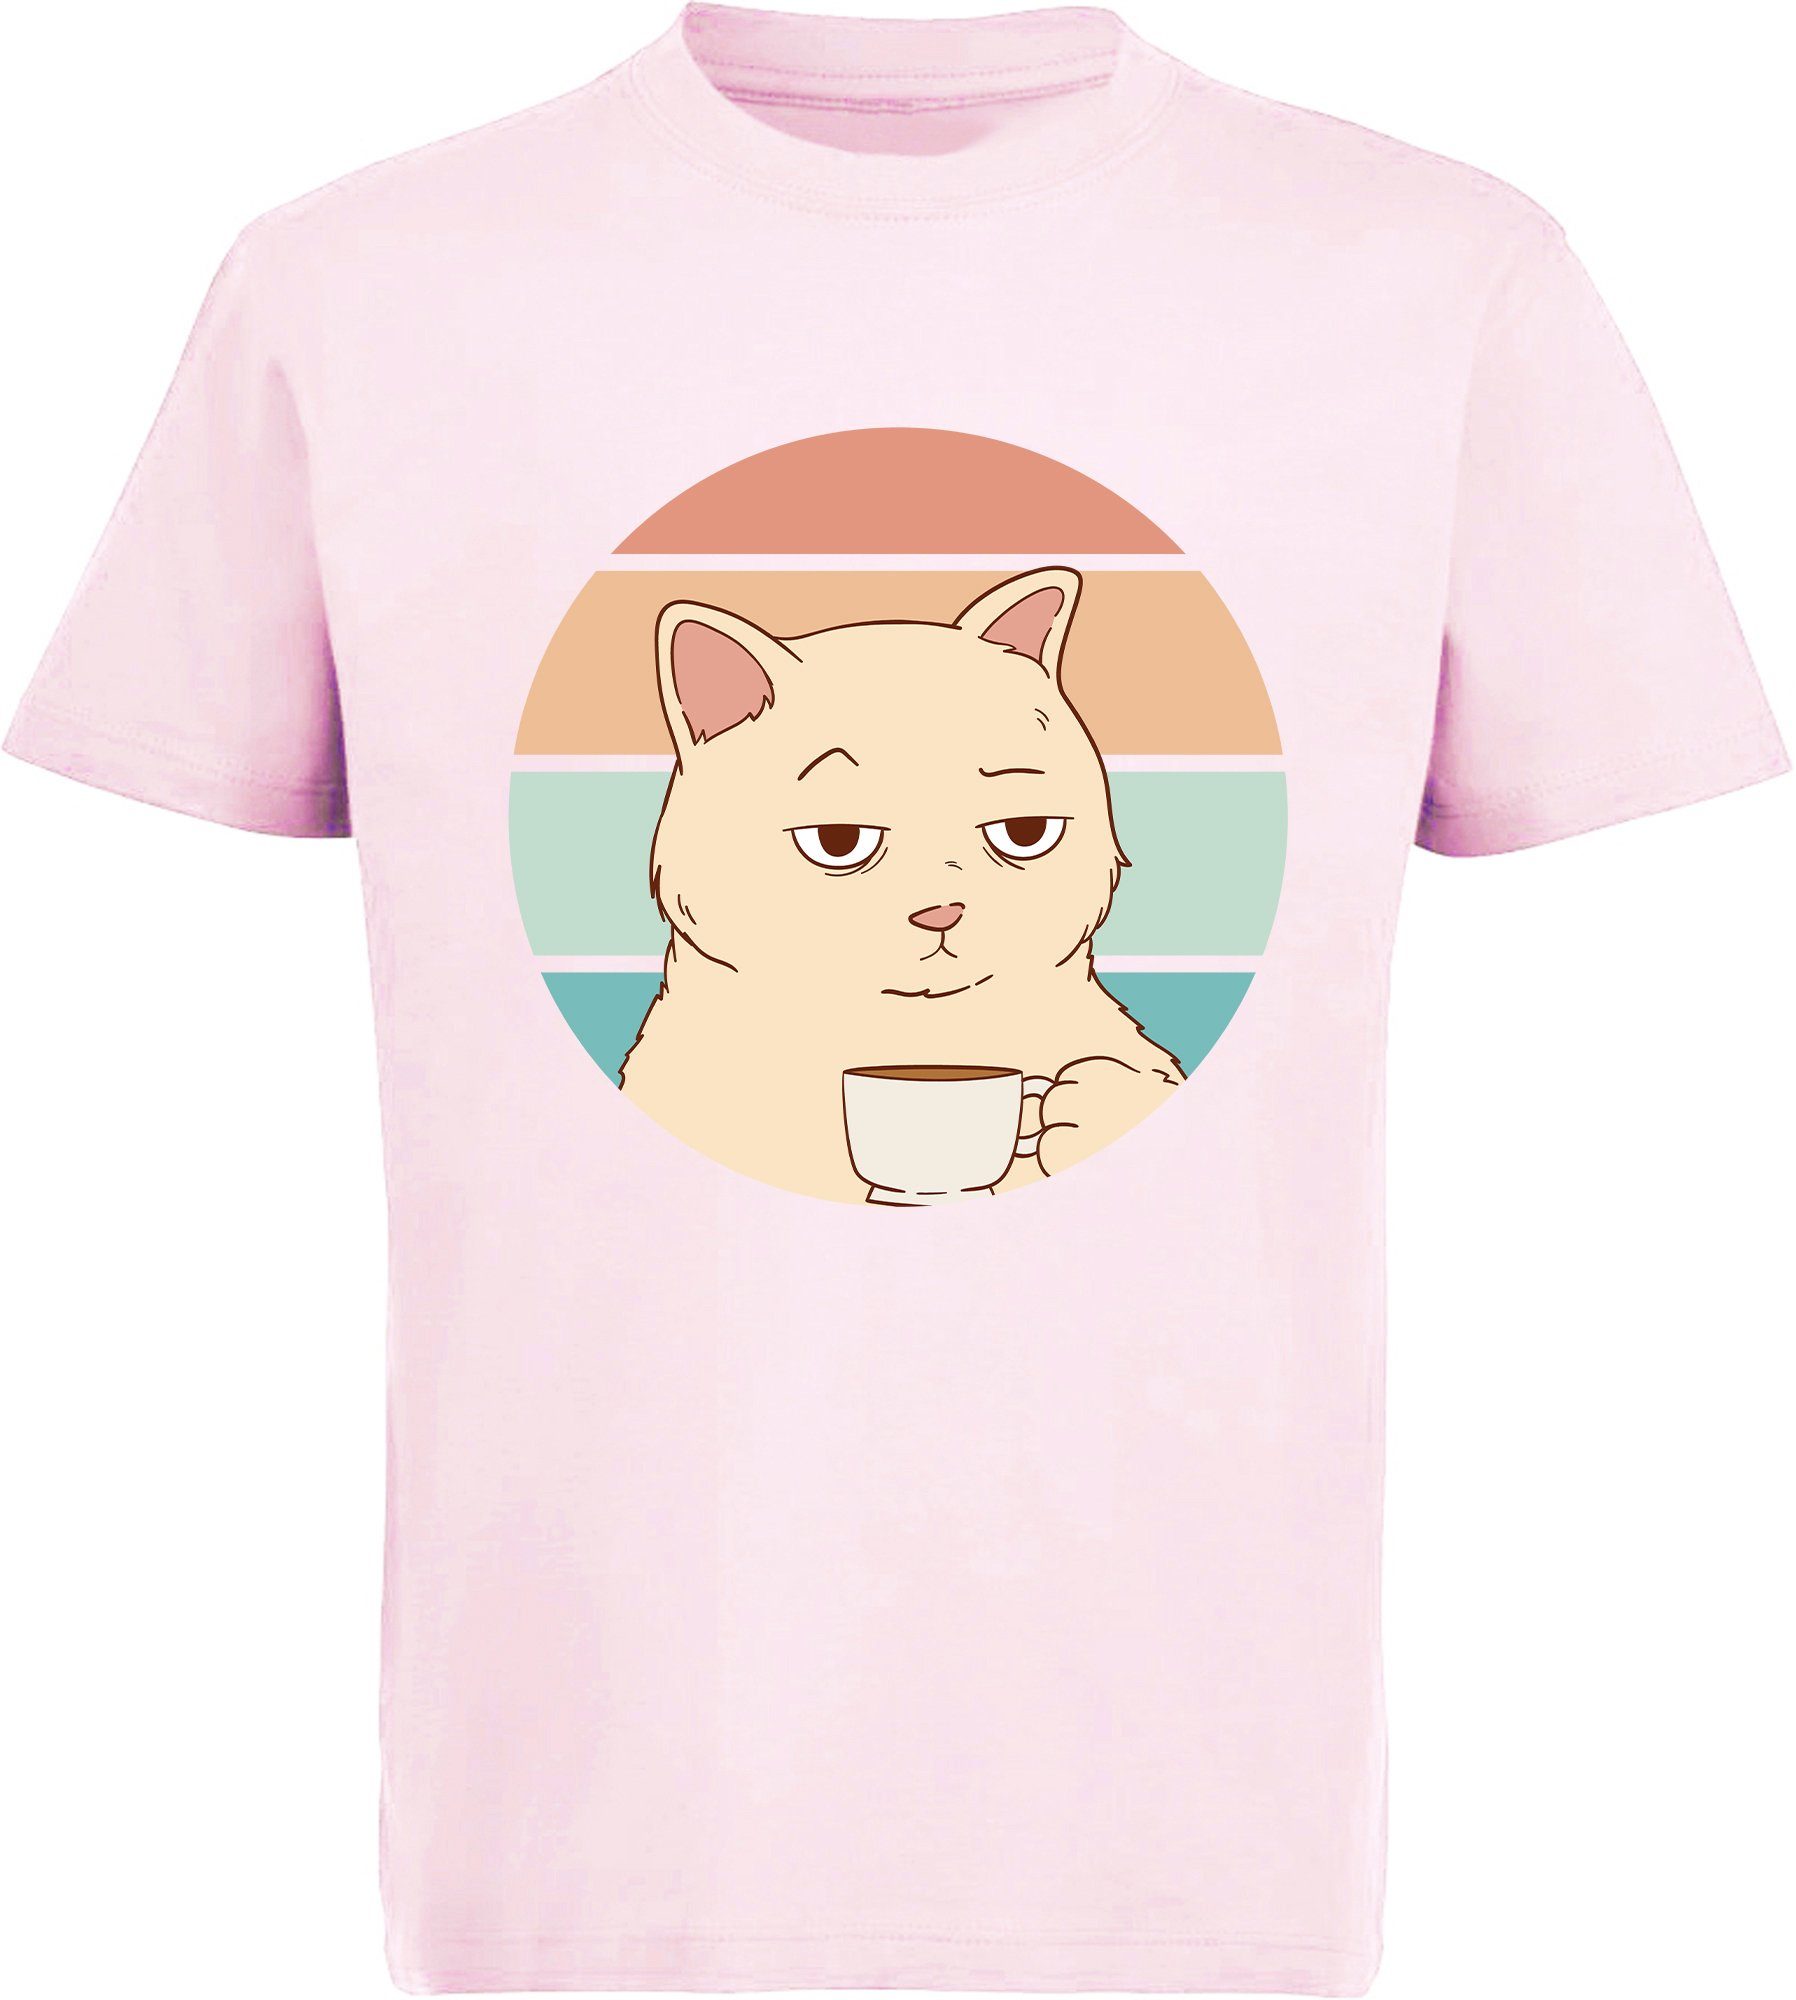 MyDesign24 Print-Shirt bedrucktes Kinder Mädchen T-Shirt Katze Retro mit Tasse Baumwollshirt mit Katze, weiß, schwarz, rot, rosa, i106